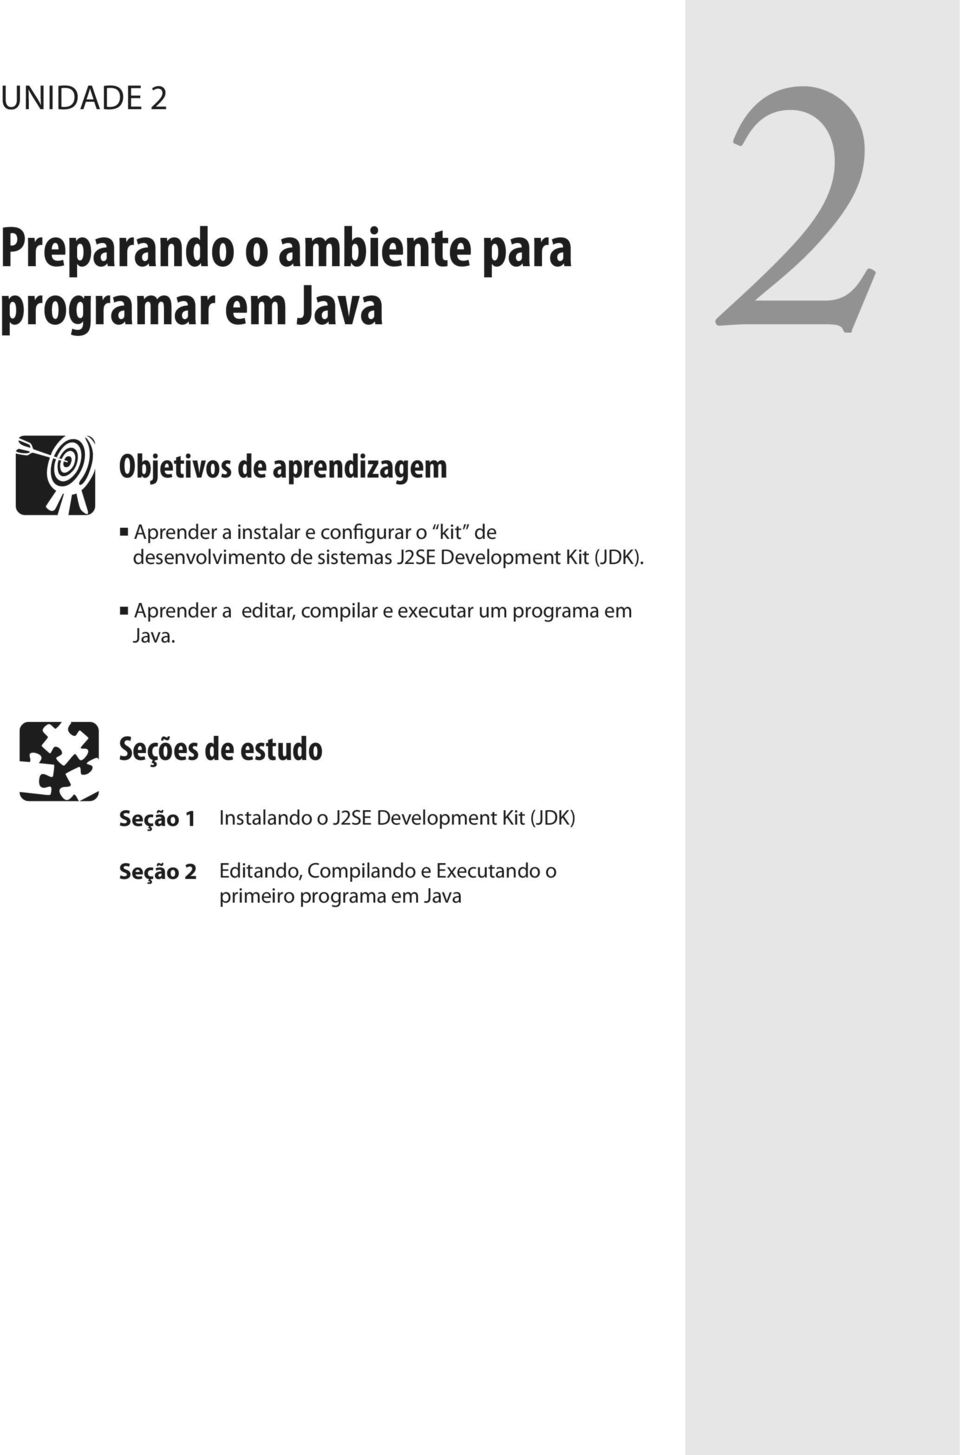 Aprender a editar, compilar e executar um programa em Java.